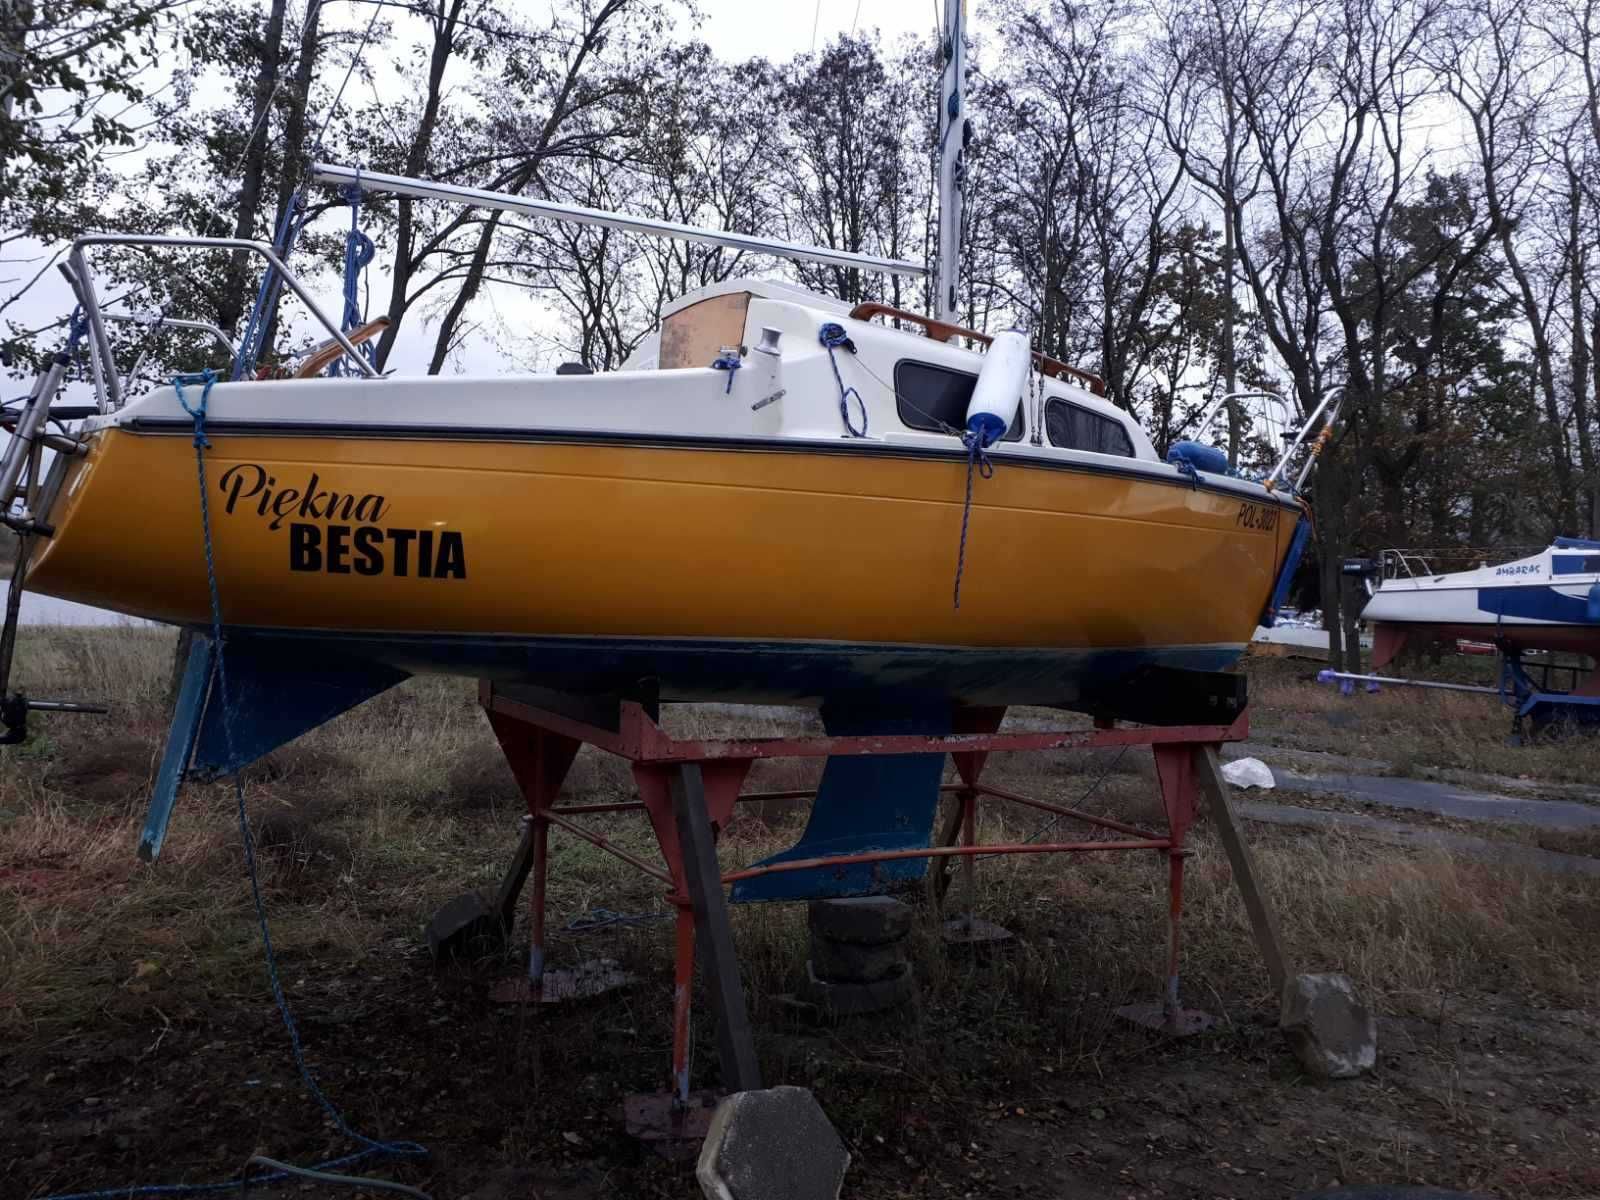 Jacht morski "Piękna i Bestia" do sprzedania niższa cena